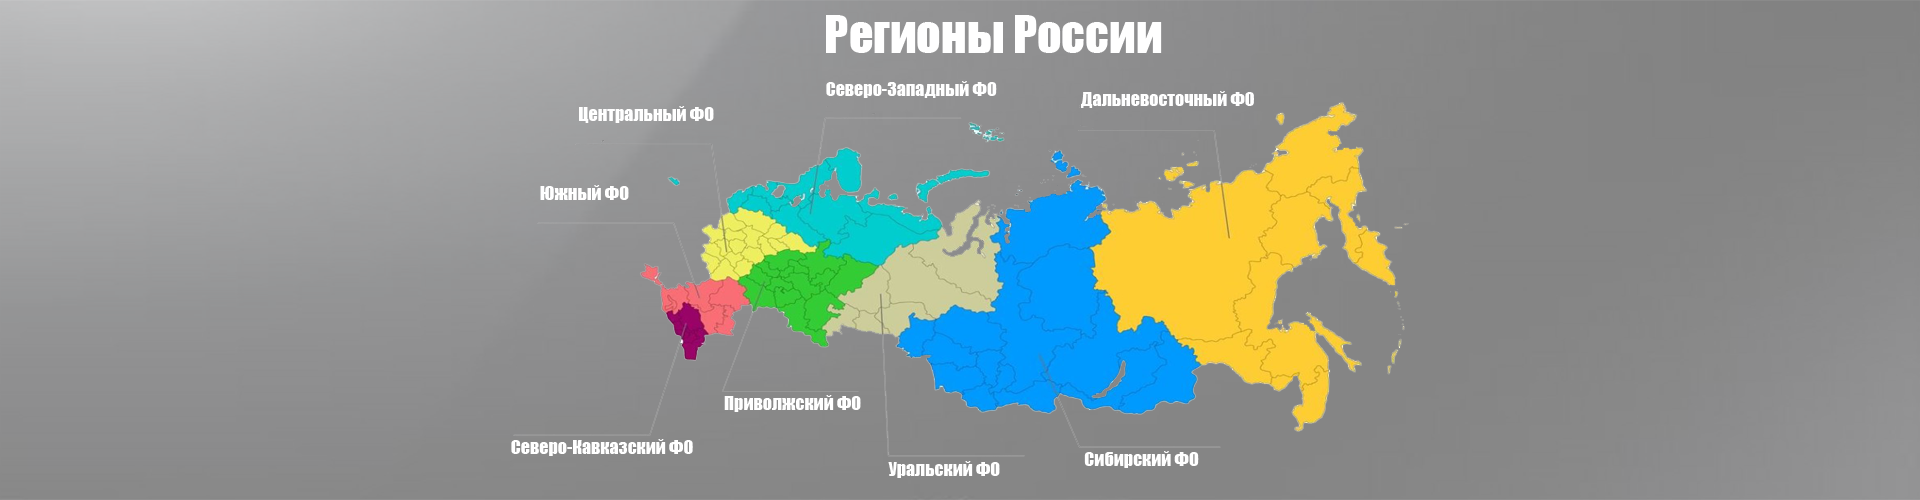 hockey-region-russia.png